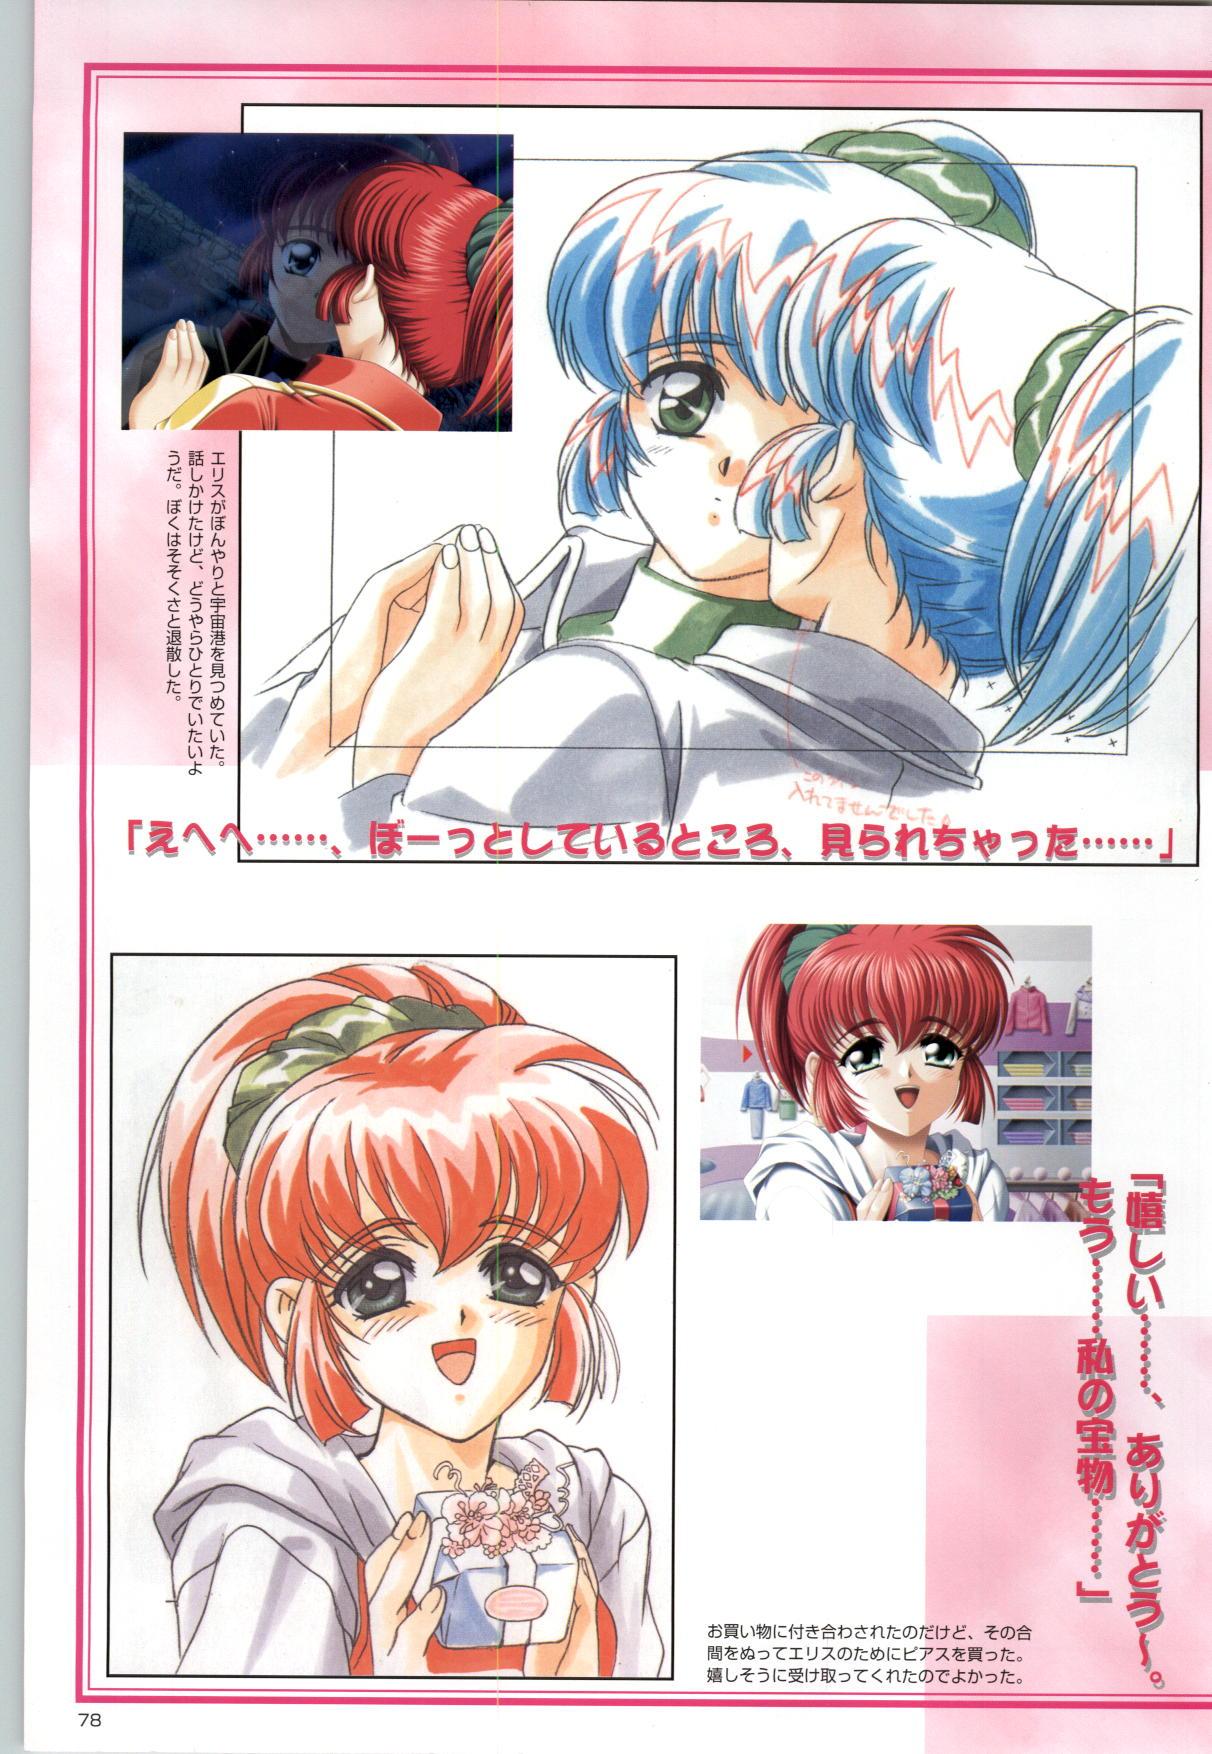 [Kinmedai Pink] ACTRESS Collection Kizuna + Seduce ~Yuuwaku~ + Hoshi no Pierce Computer Graphics & Original Pictures 78